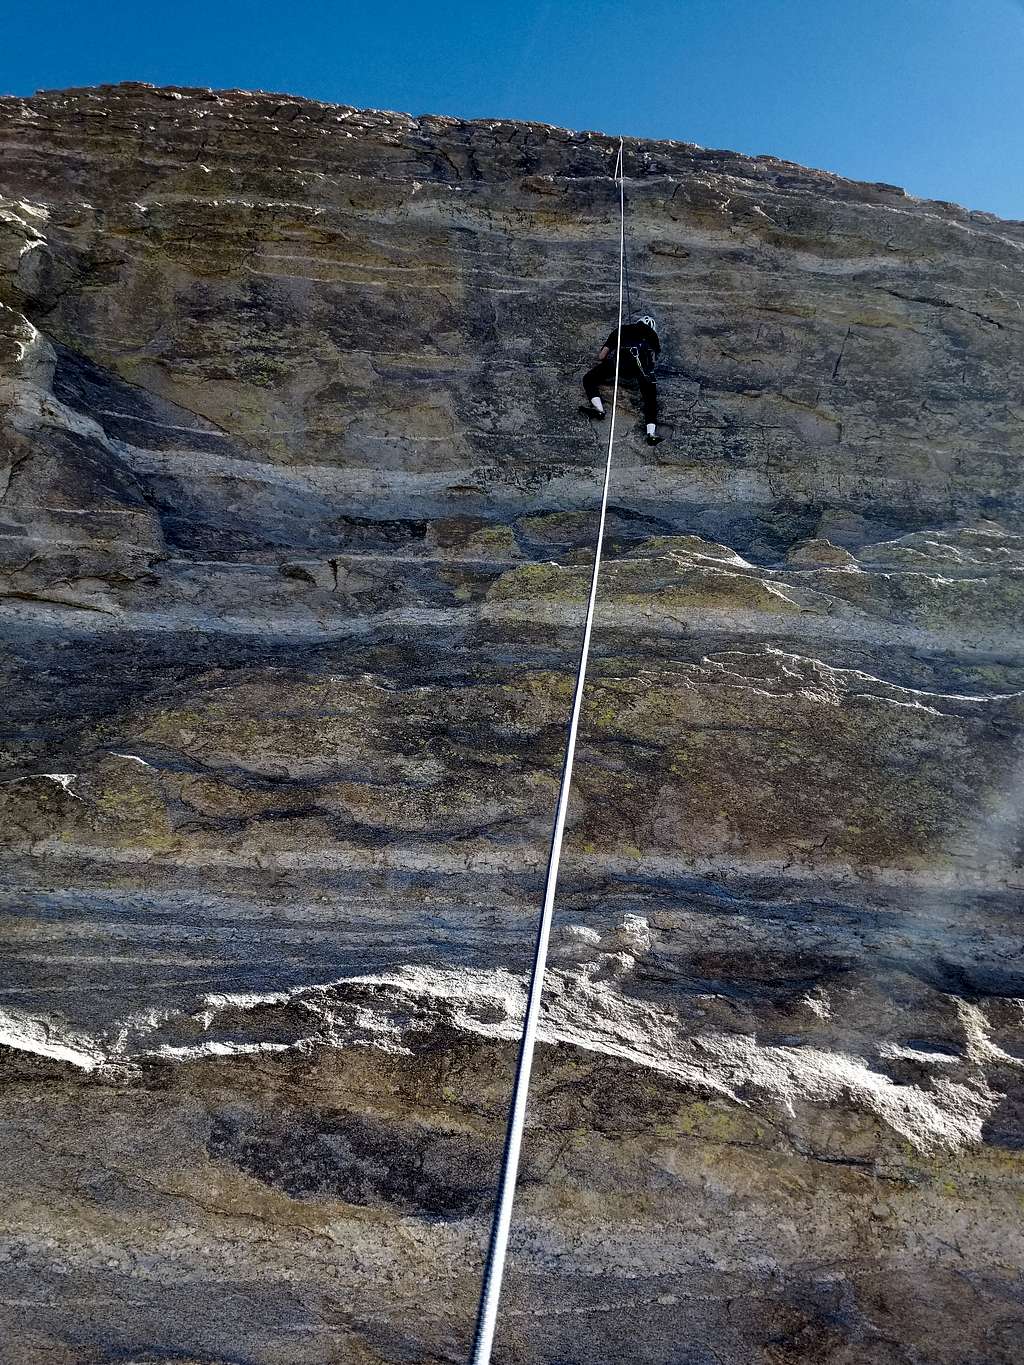 Kessler climbing at Windy Point on Mount Lemmon